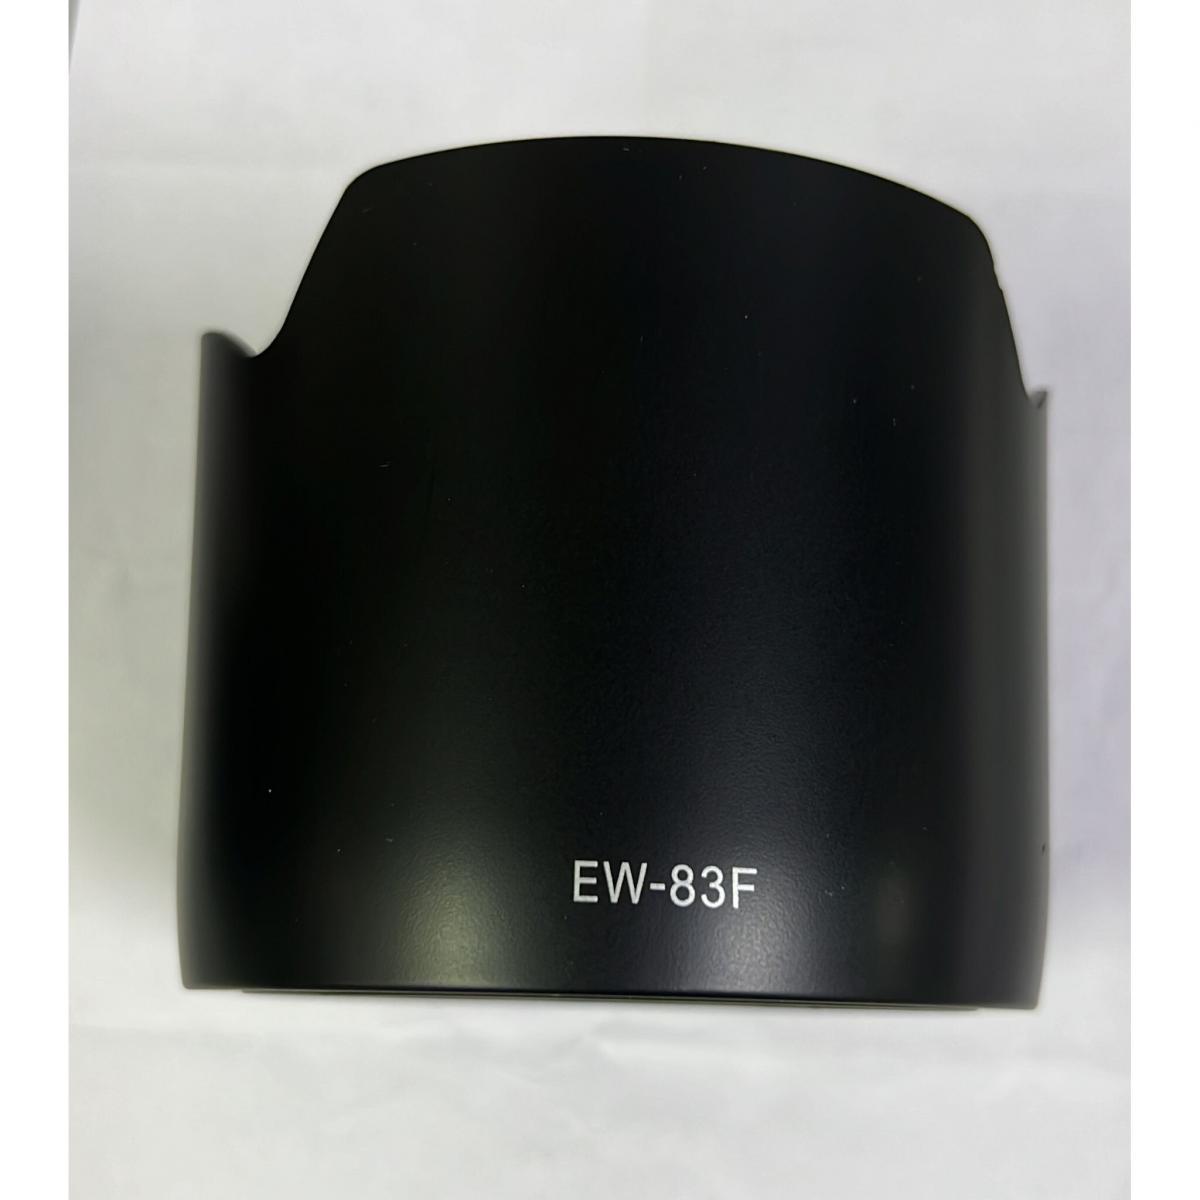 代用鏡頭遮光罩 EW-83F (Canon EF 24-70mm f/2.8L USM 適用)